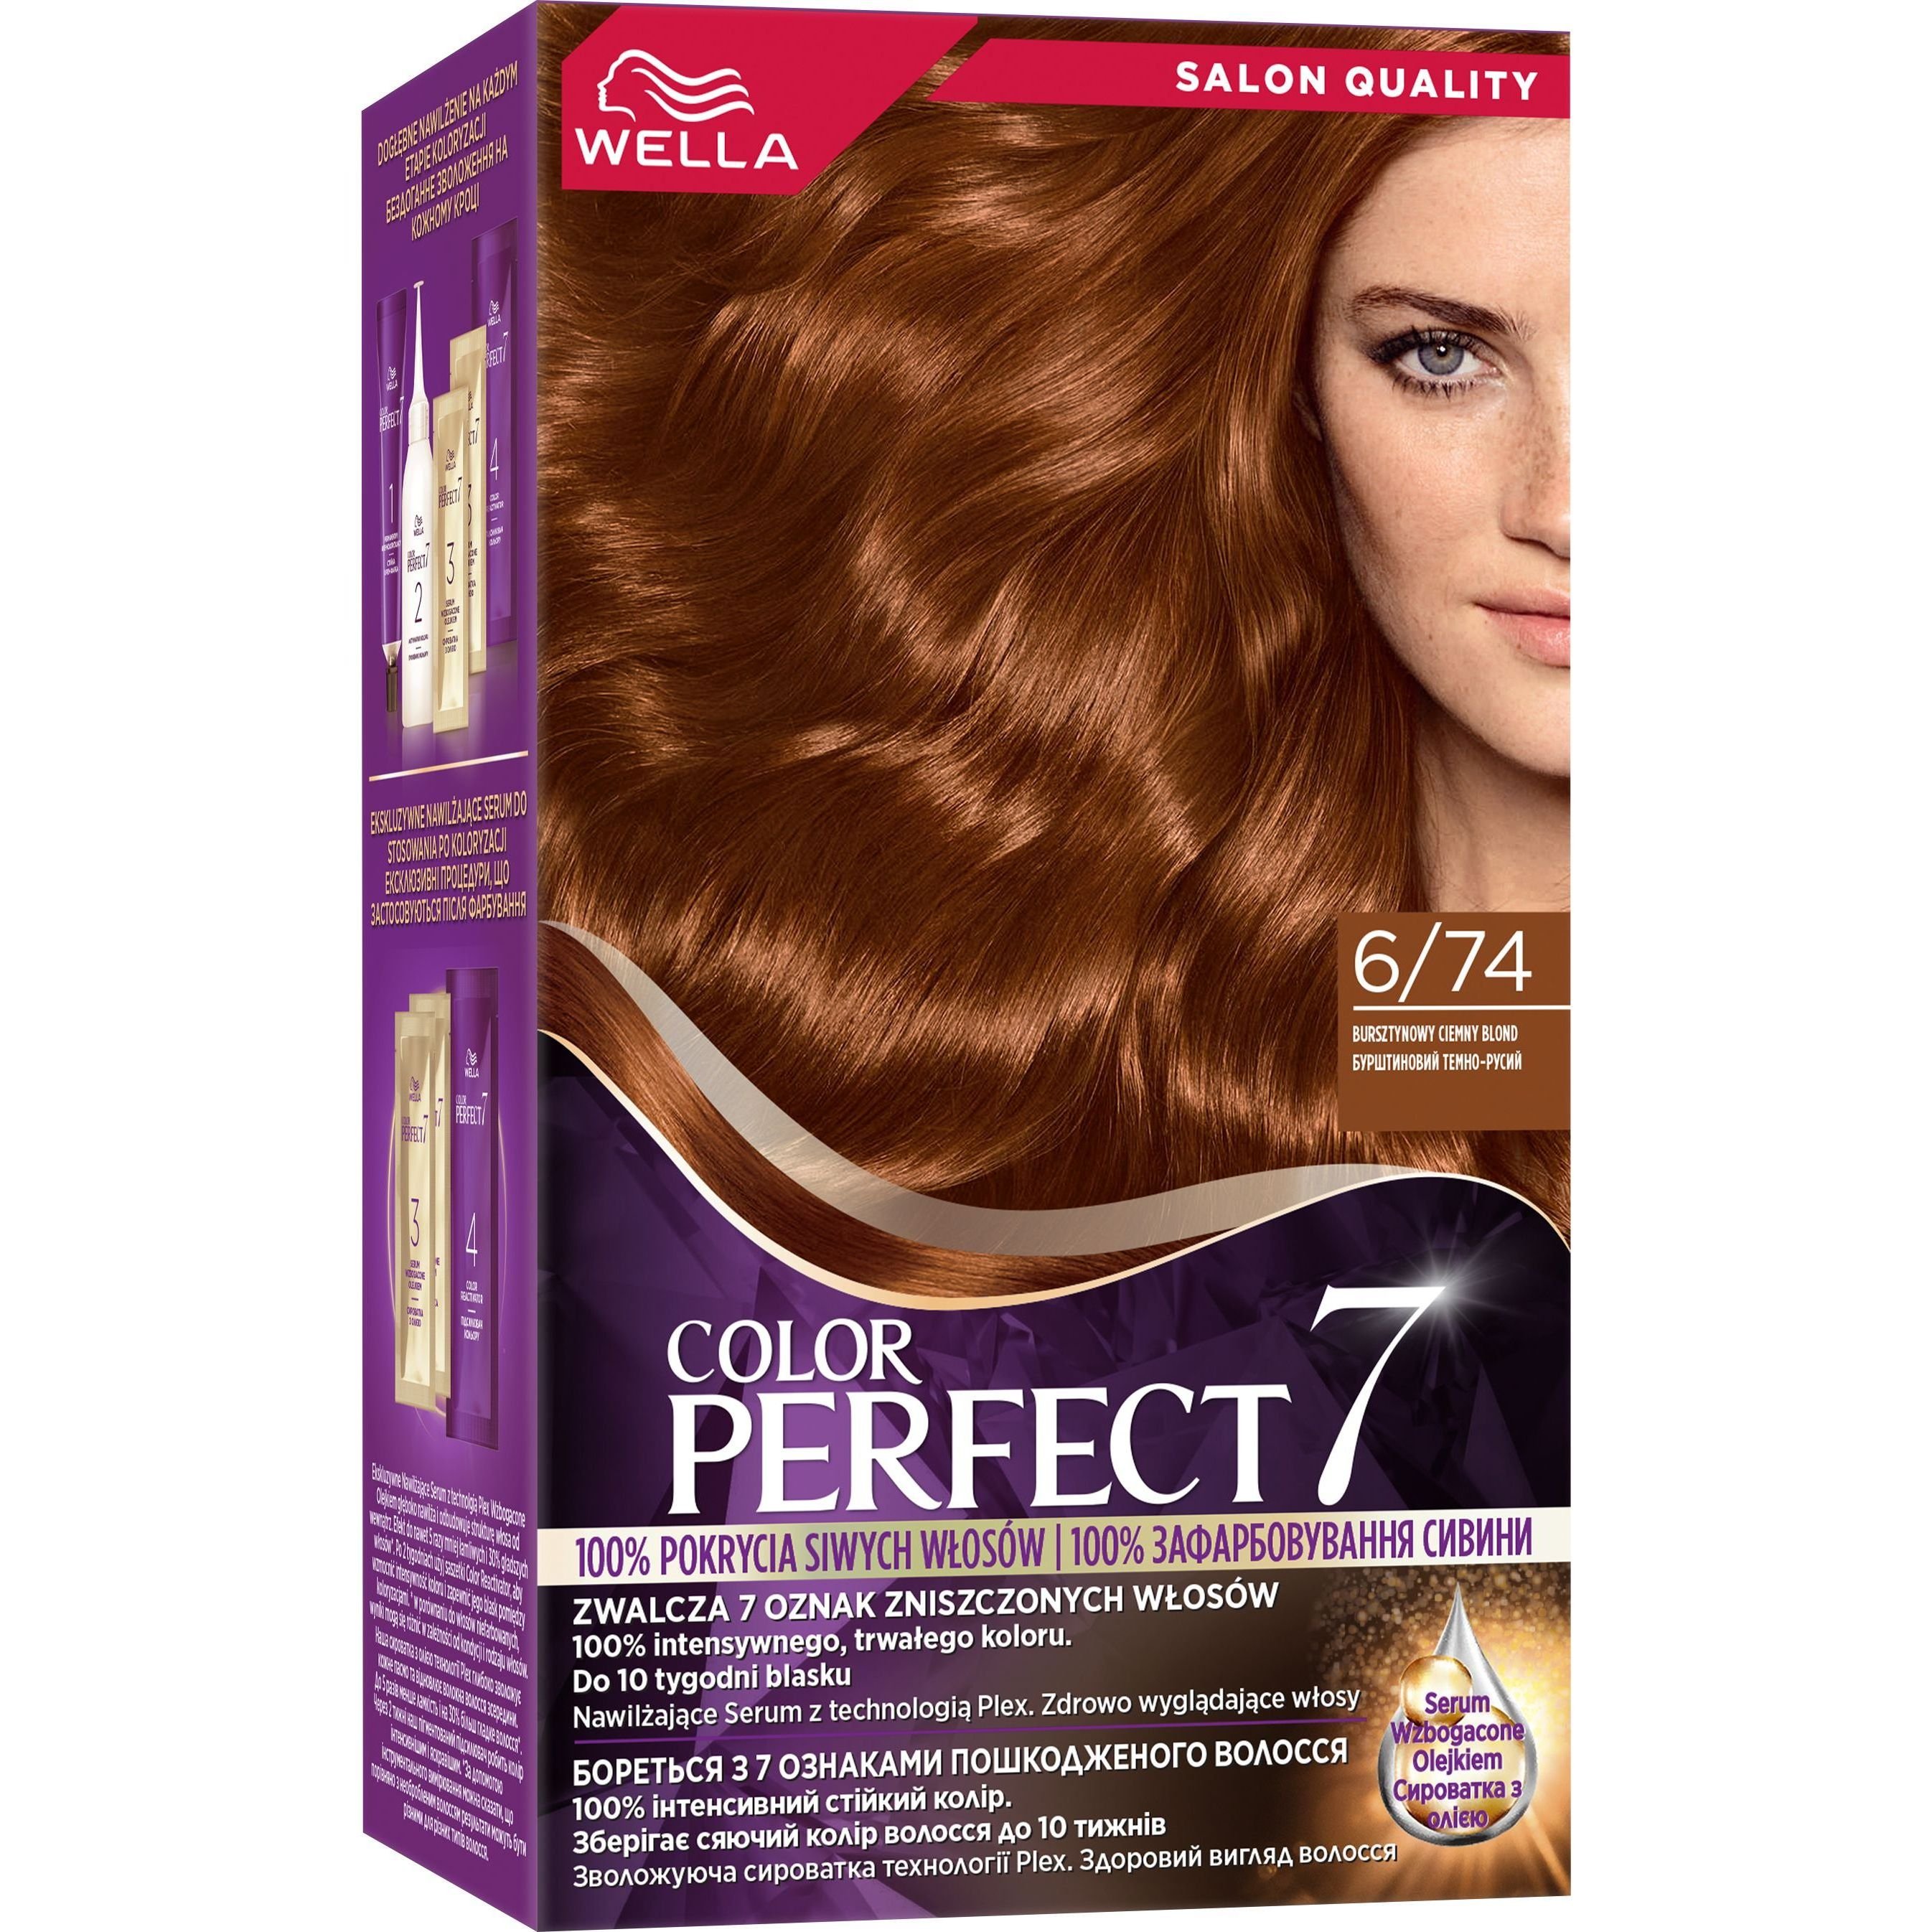 Стійка крем-фарба для волосся Wella Color Perfect 6/74 Бурштиновий темно-русий (4064666598345) - фото 1